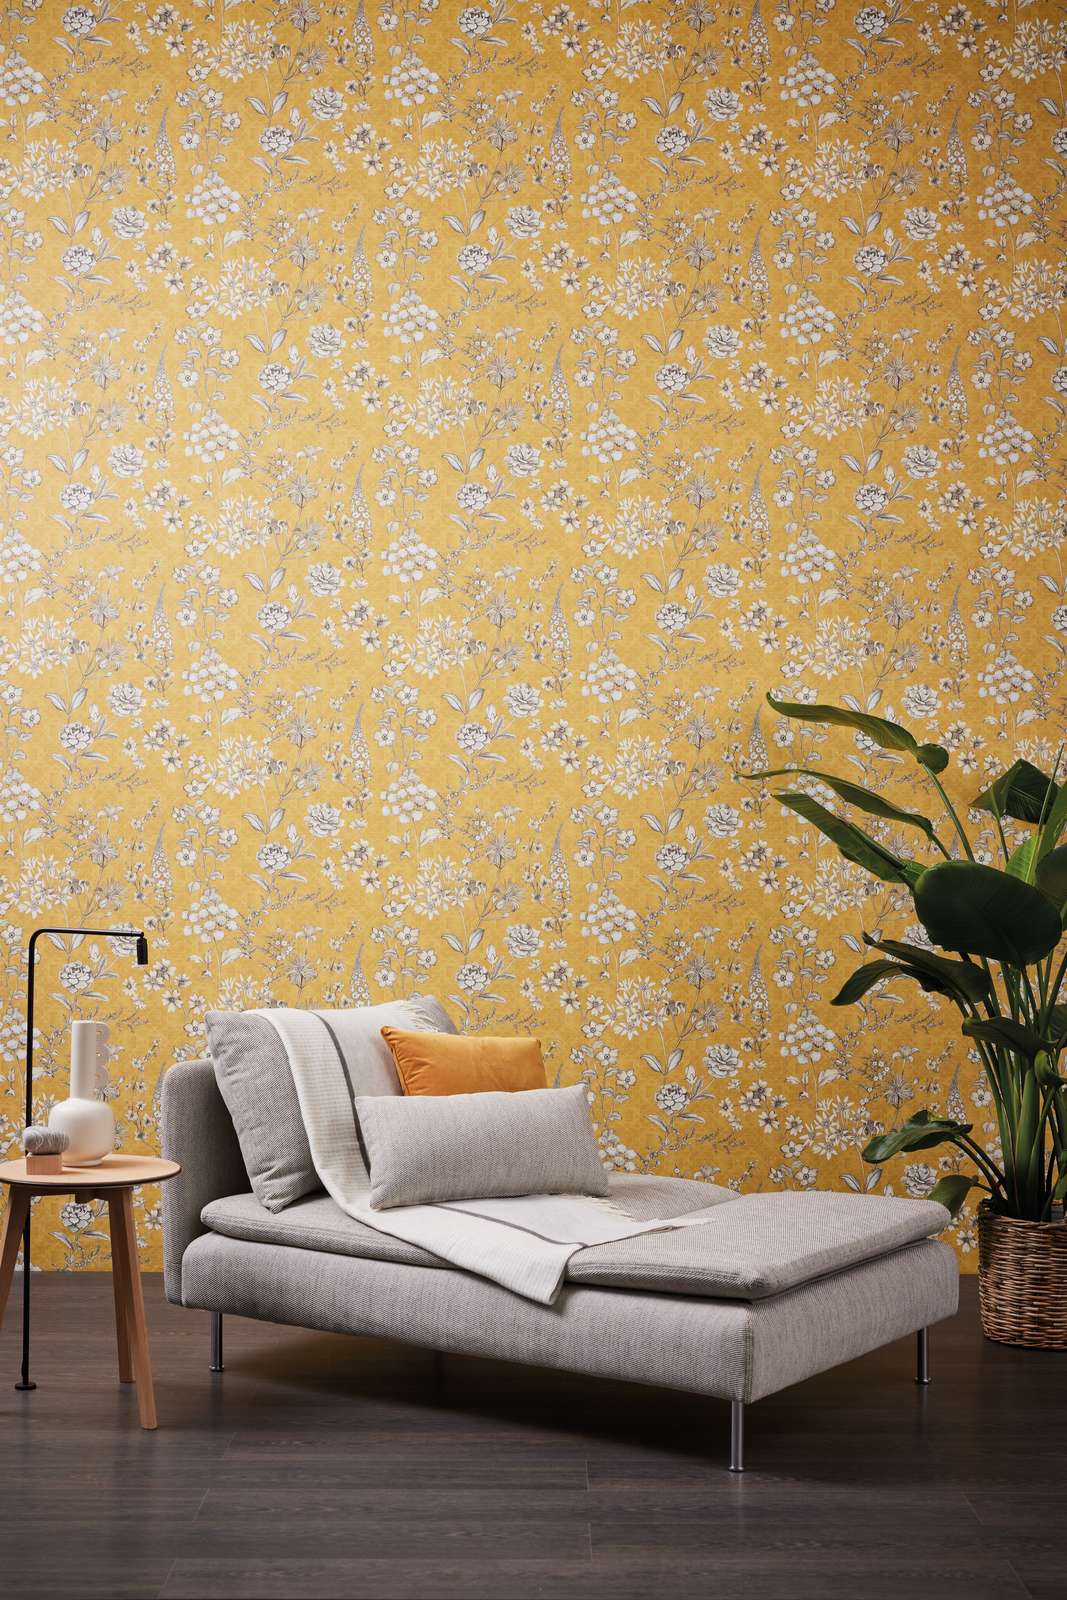             Papel pintado no tejido vintage con motivos florales - amarillo, blanco, gris
        